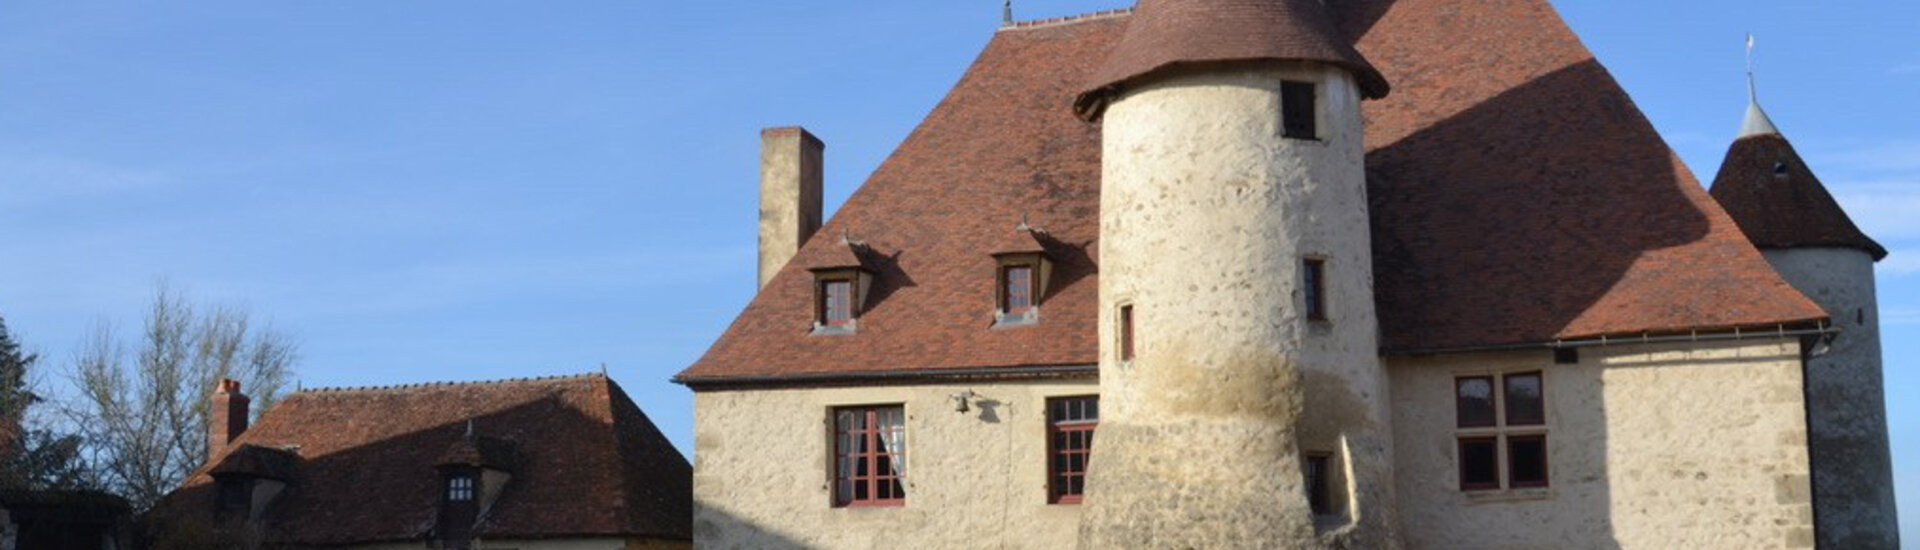 Le Château de Fontariol sur la commune du Theil 03 Allier